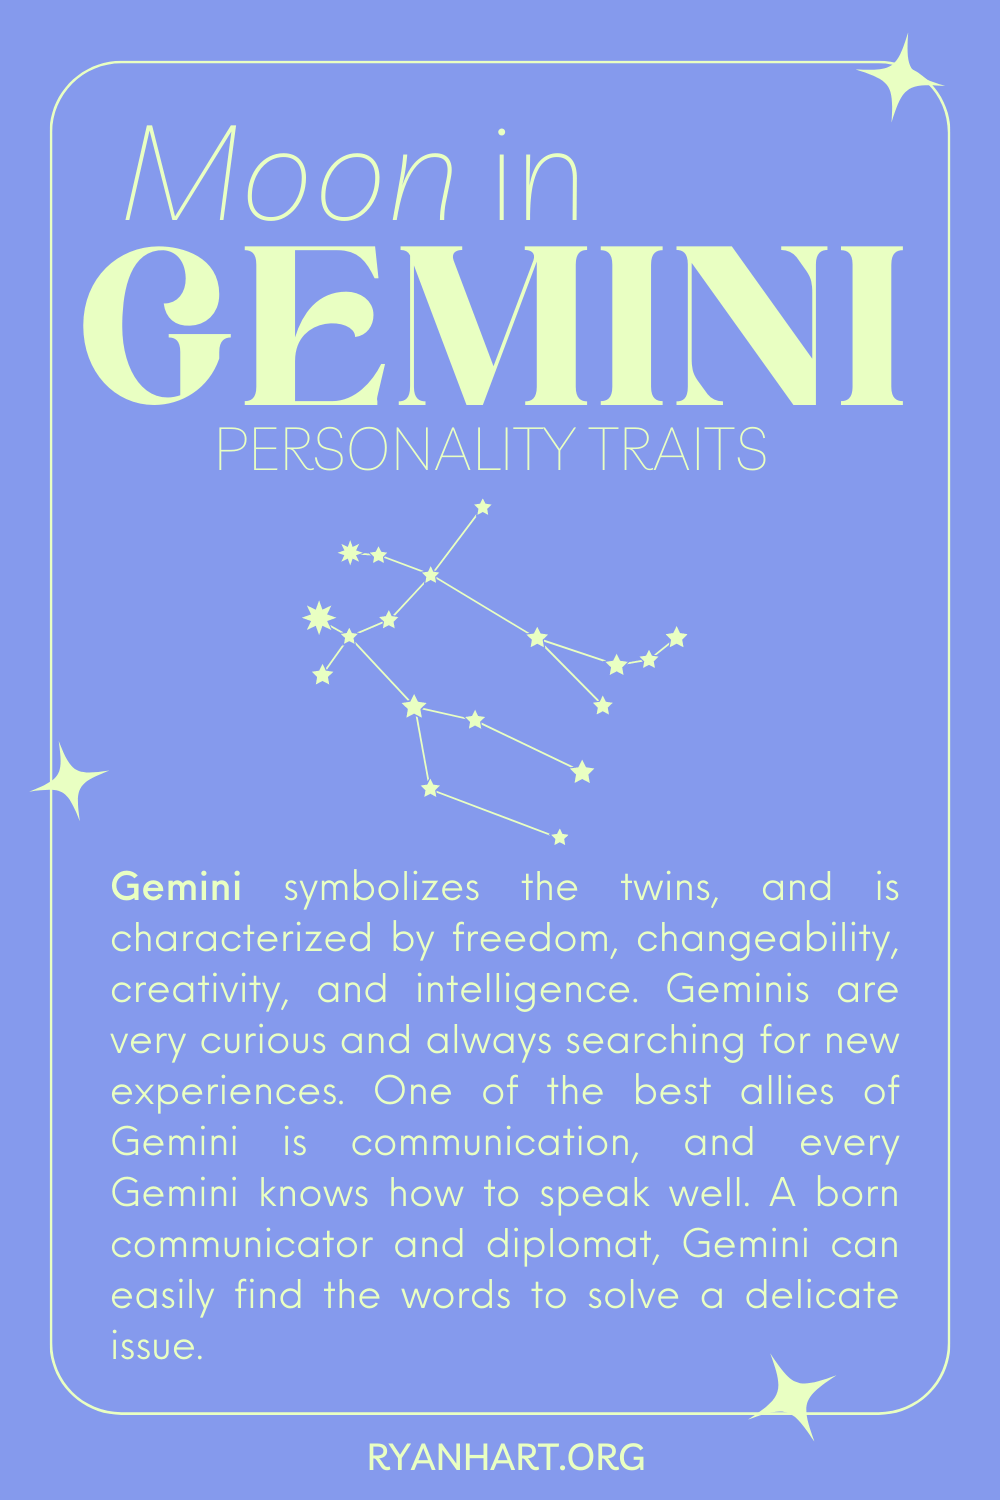 Moon in Gemini Zodiac Sign Description